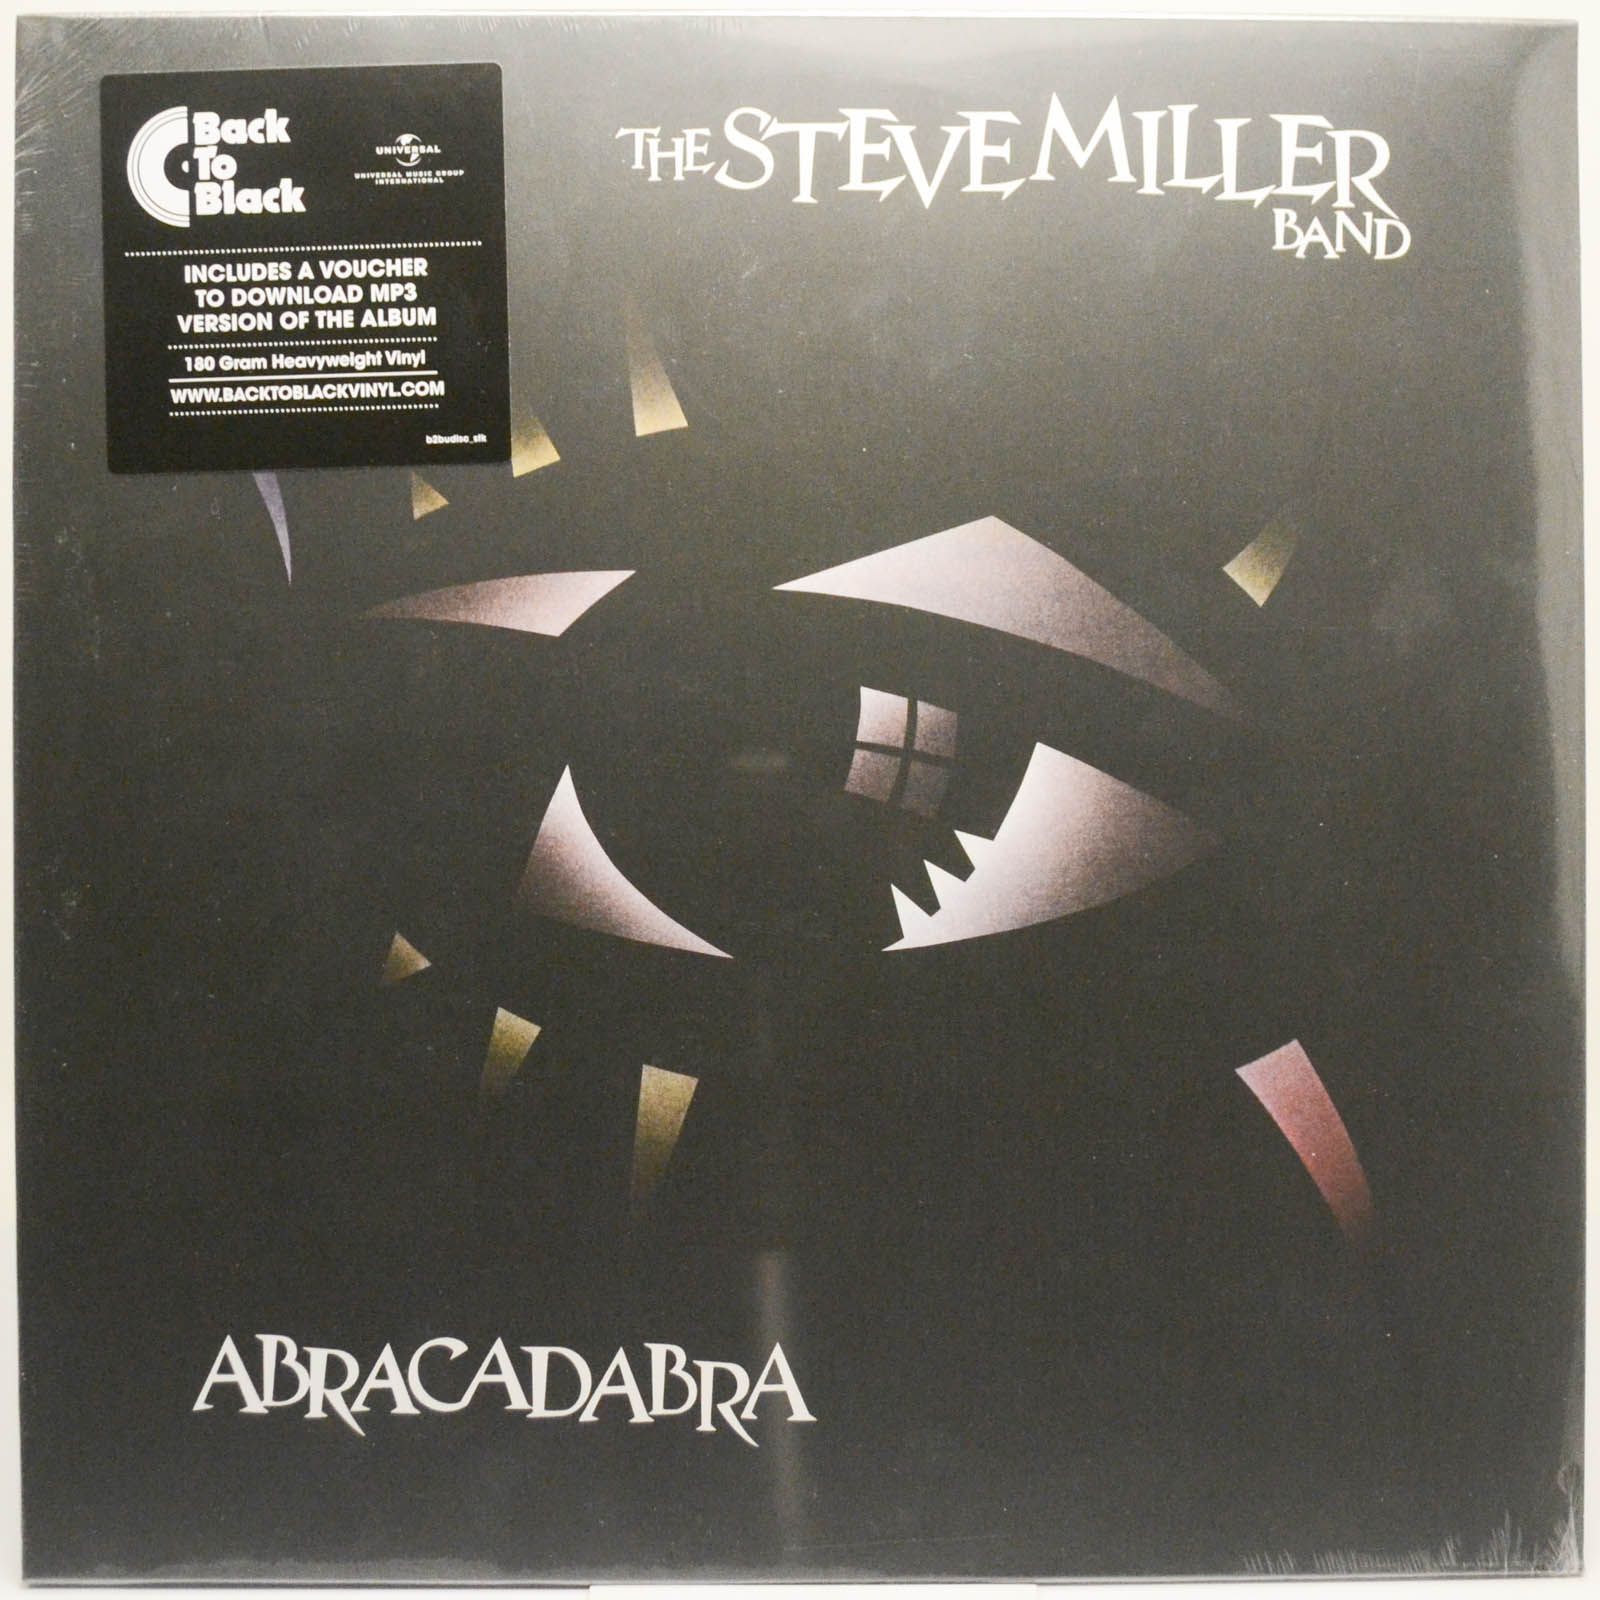 The Steve Miller Band — Abracadabra, 1977